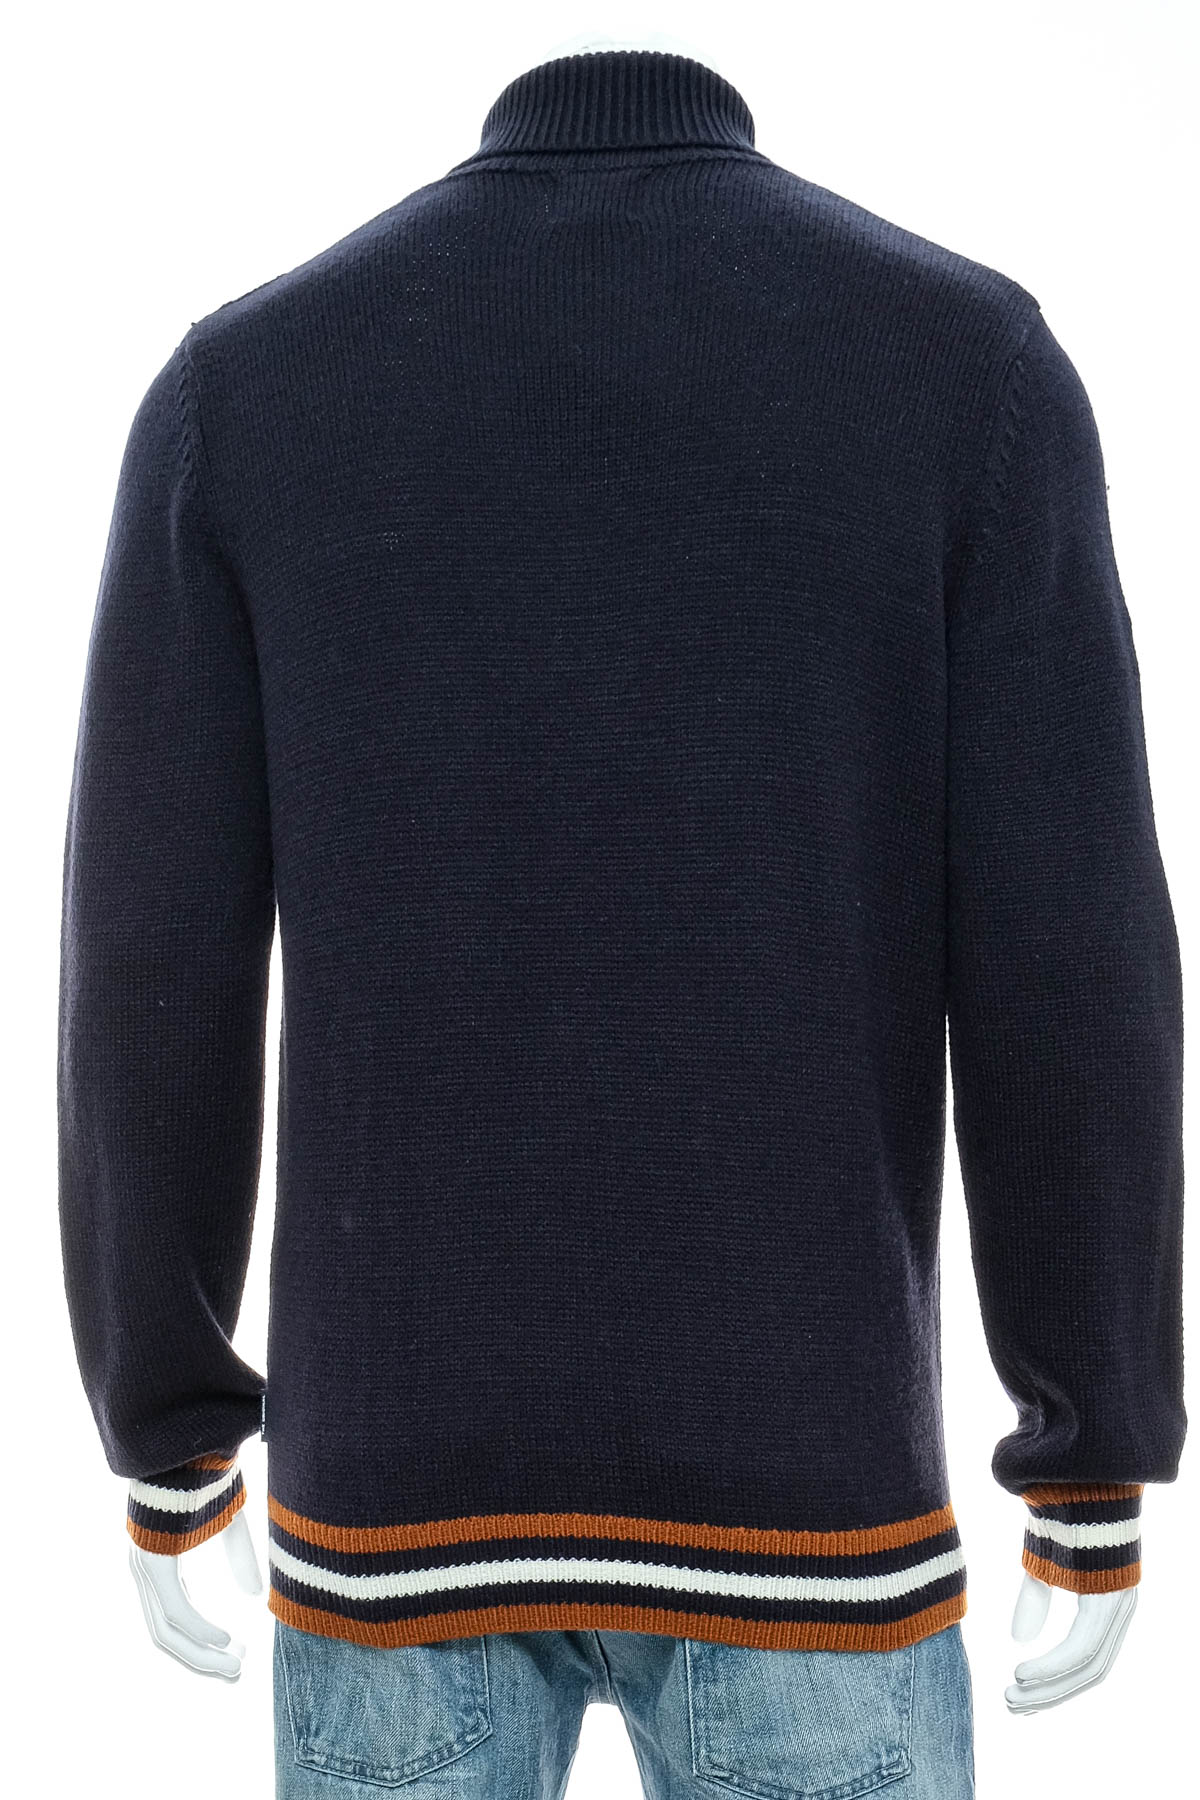 Men's sweater - Ben Sherman - 1